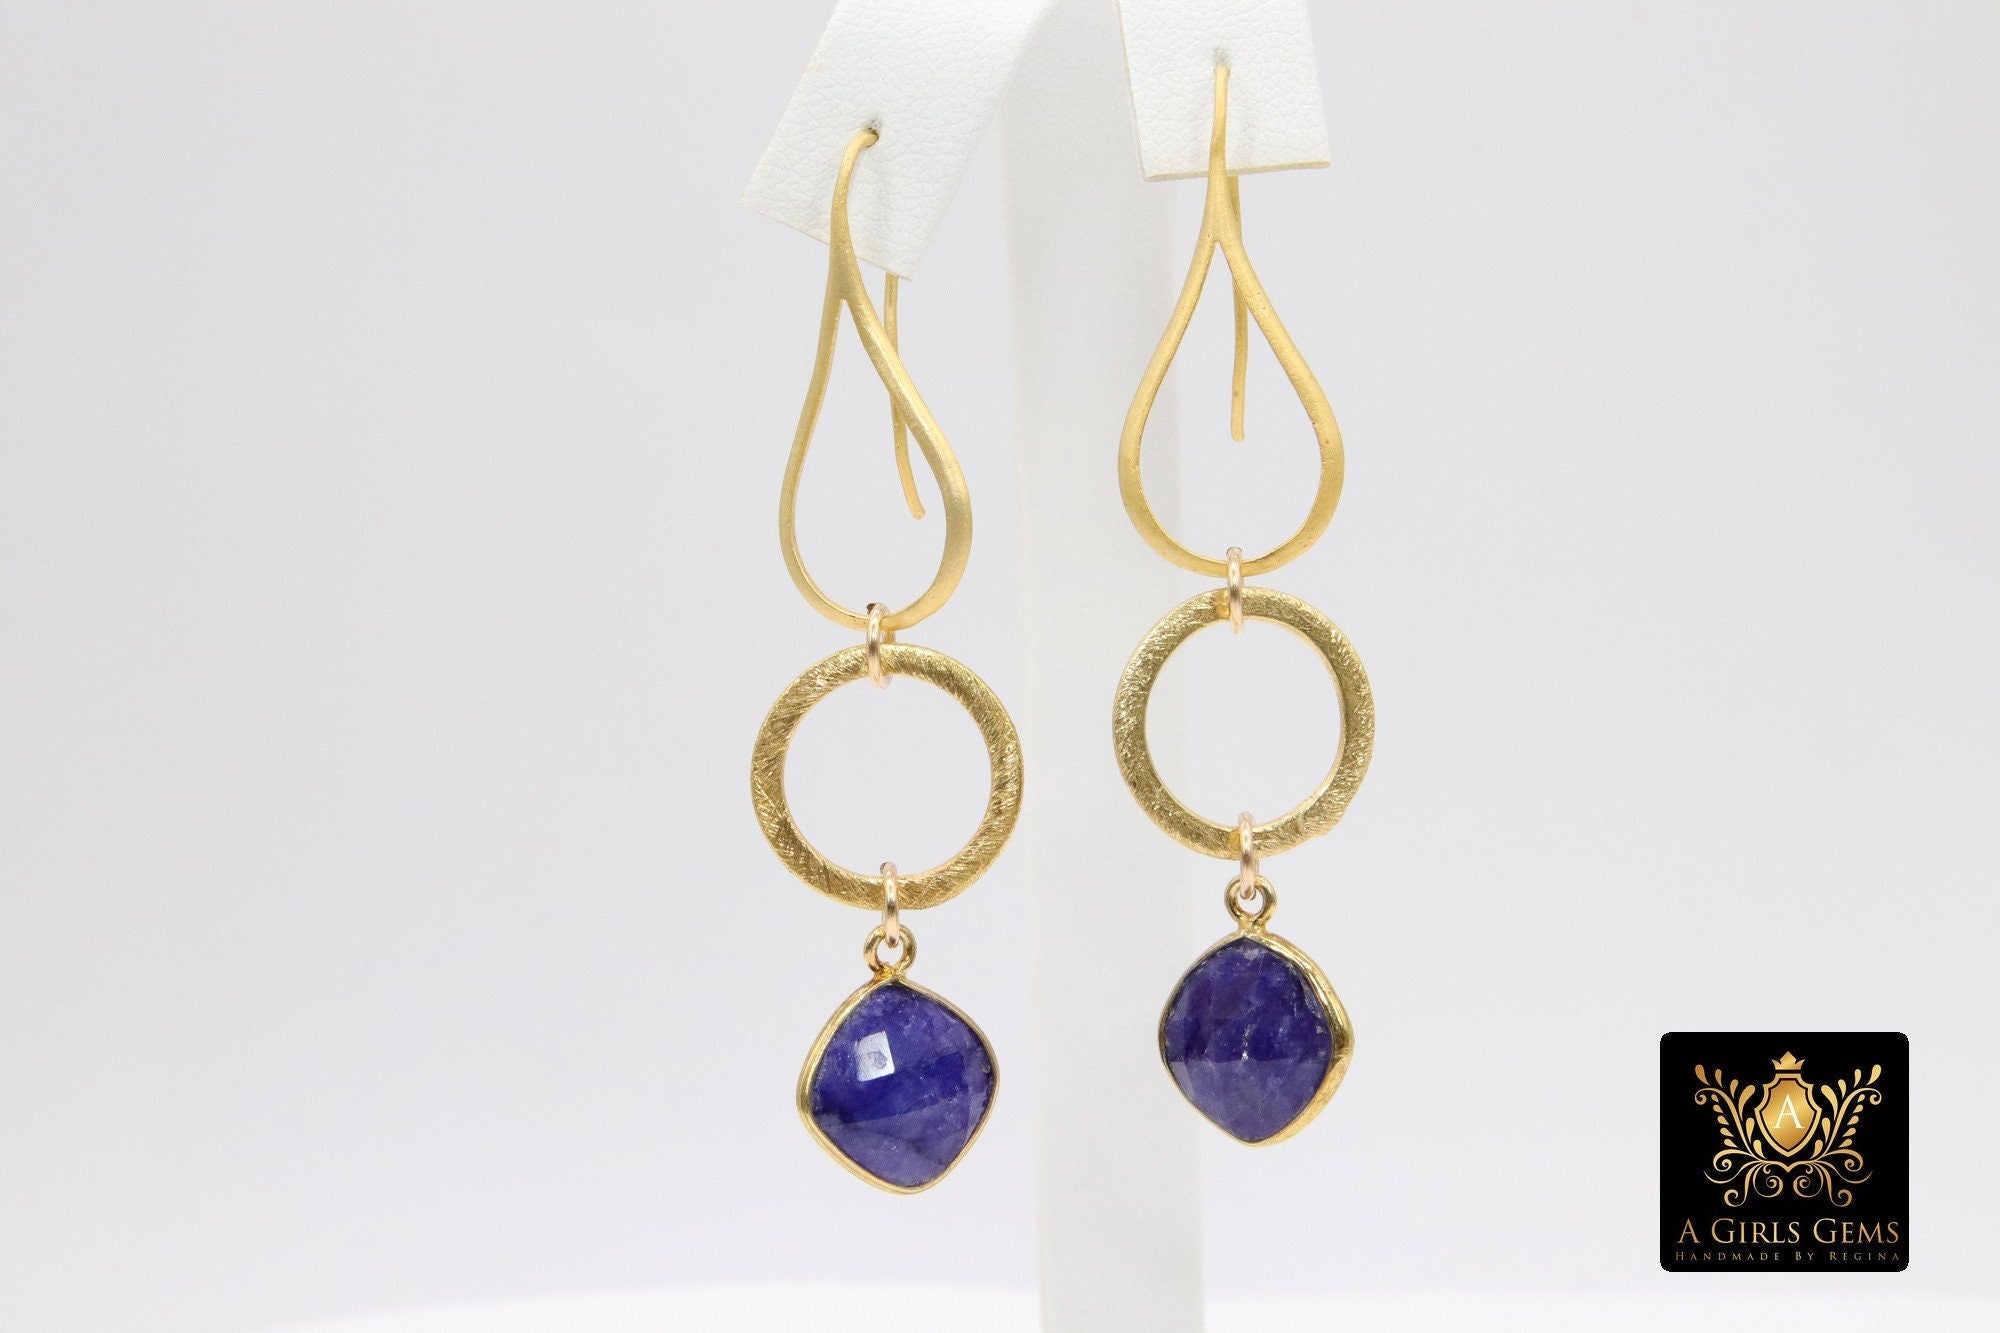 Blue Sapphire Earrings, Long Gemstone Earrings, Gold Dangle Ear Wire Hooks